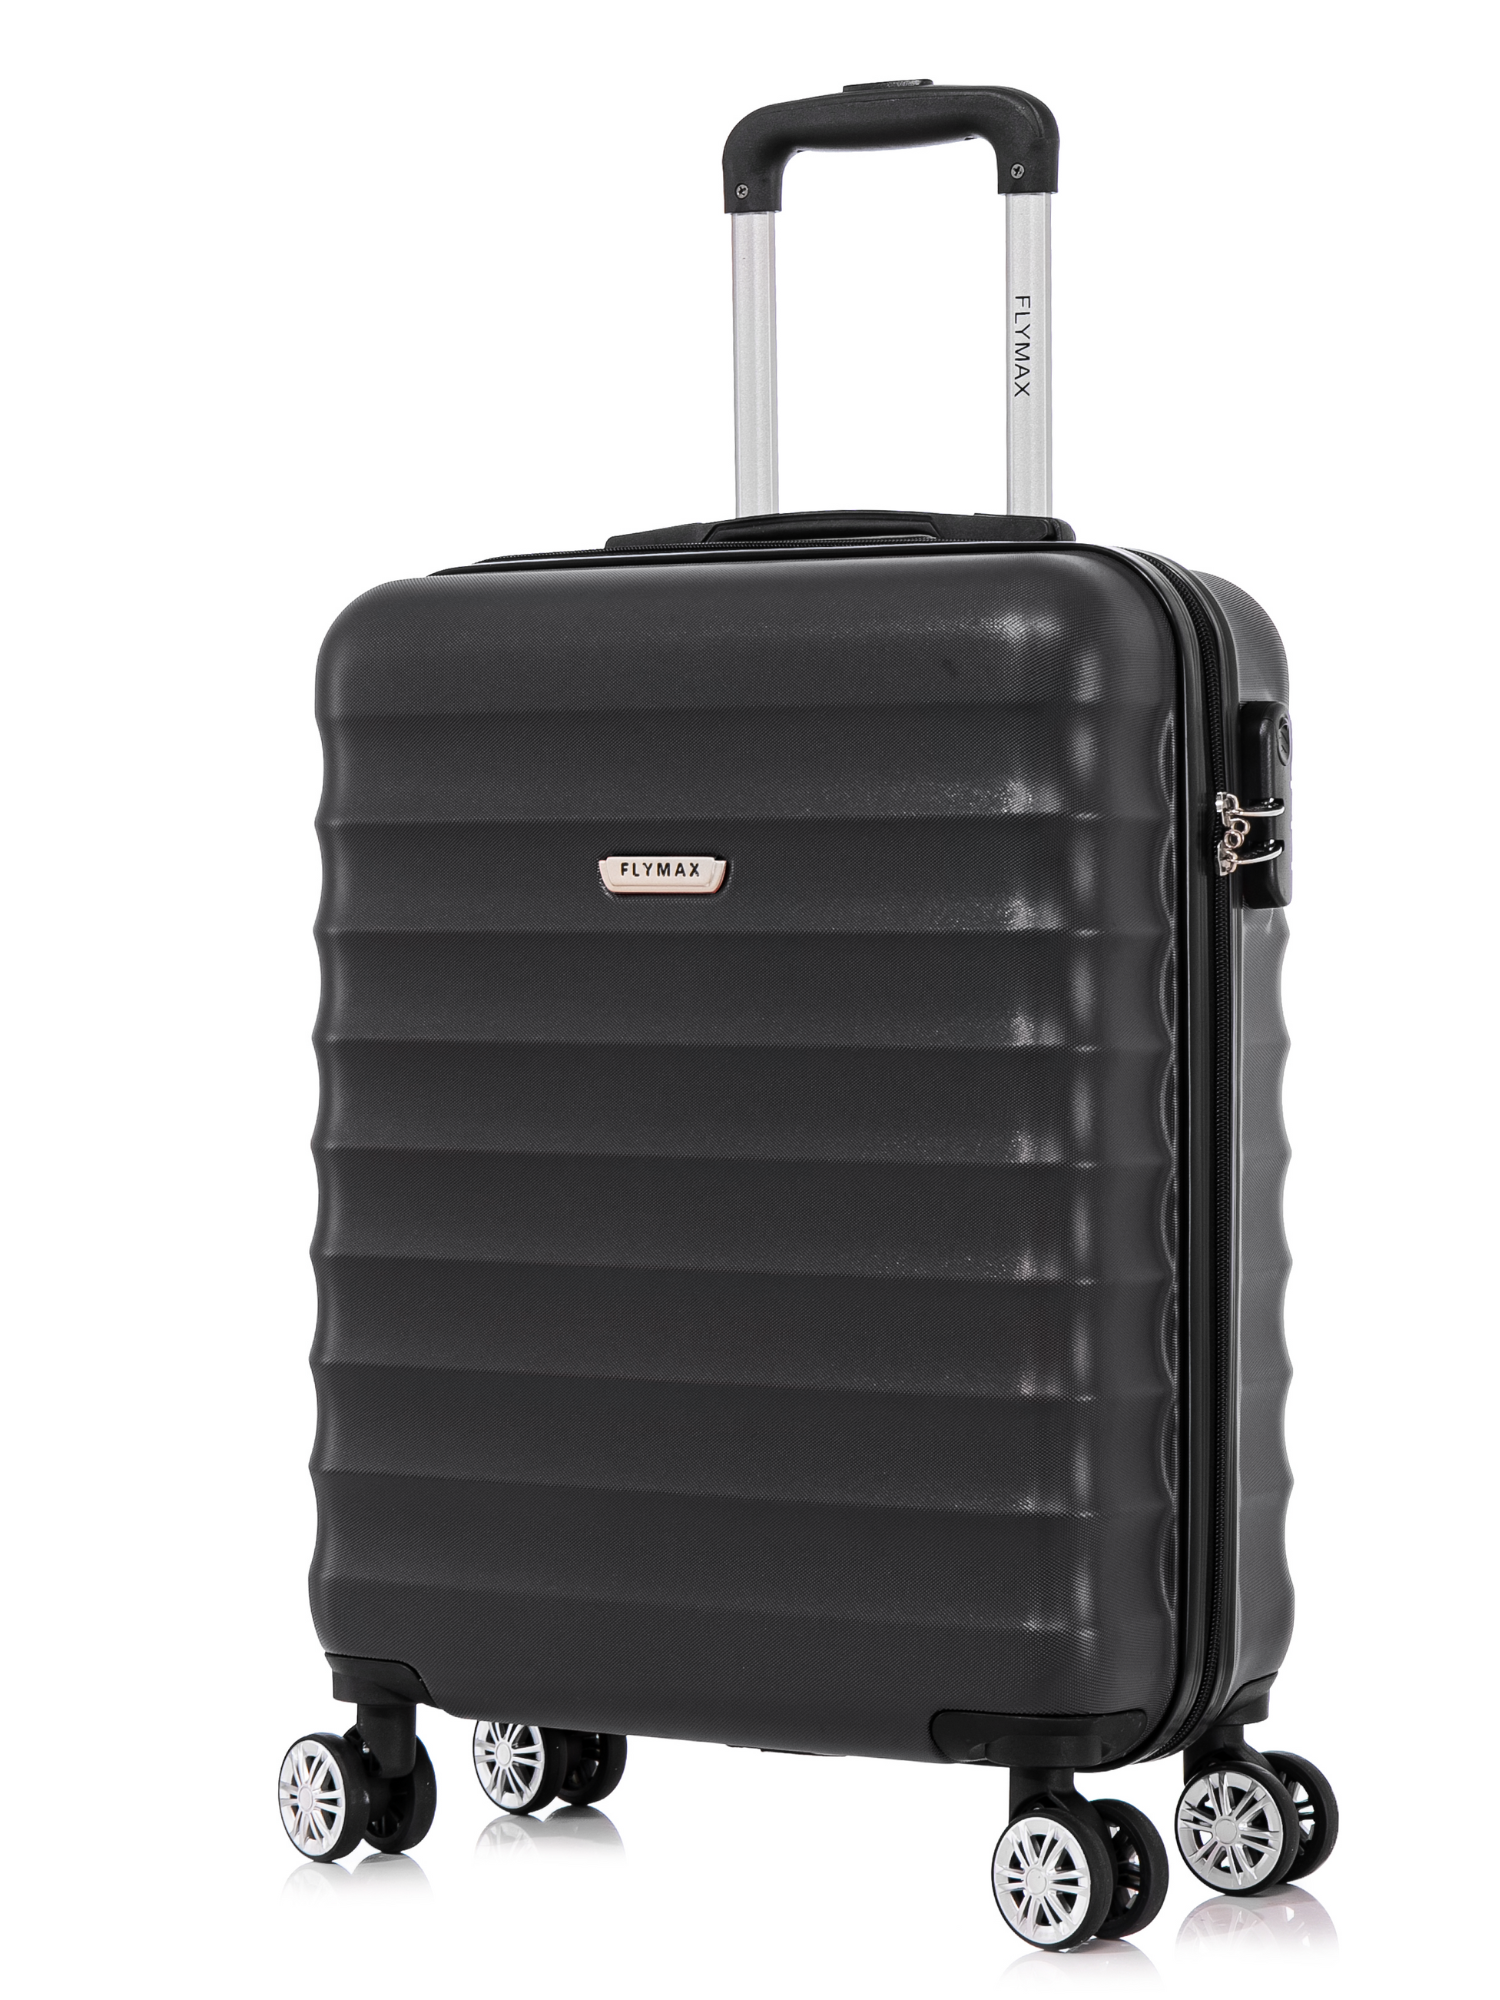 55x40x20 4 Wheel Super Lightweight Cabin Luggage Suitcase